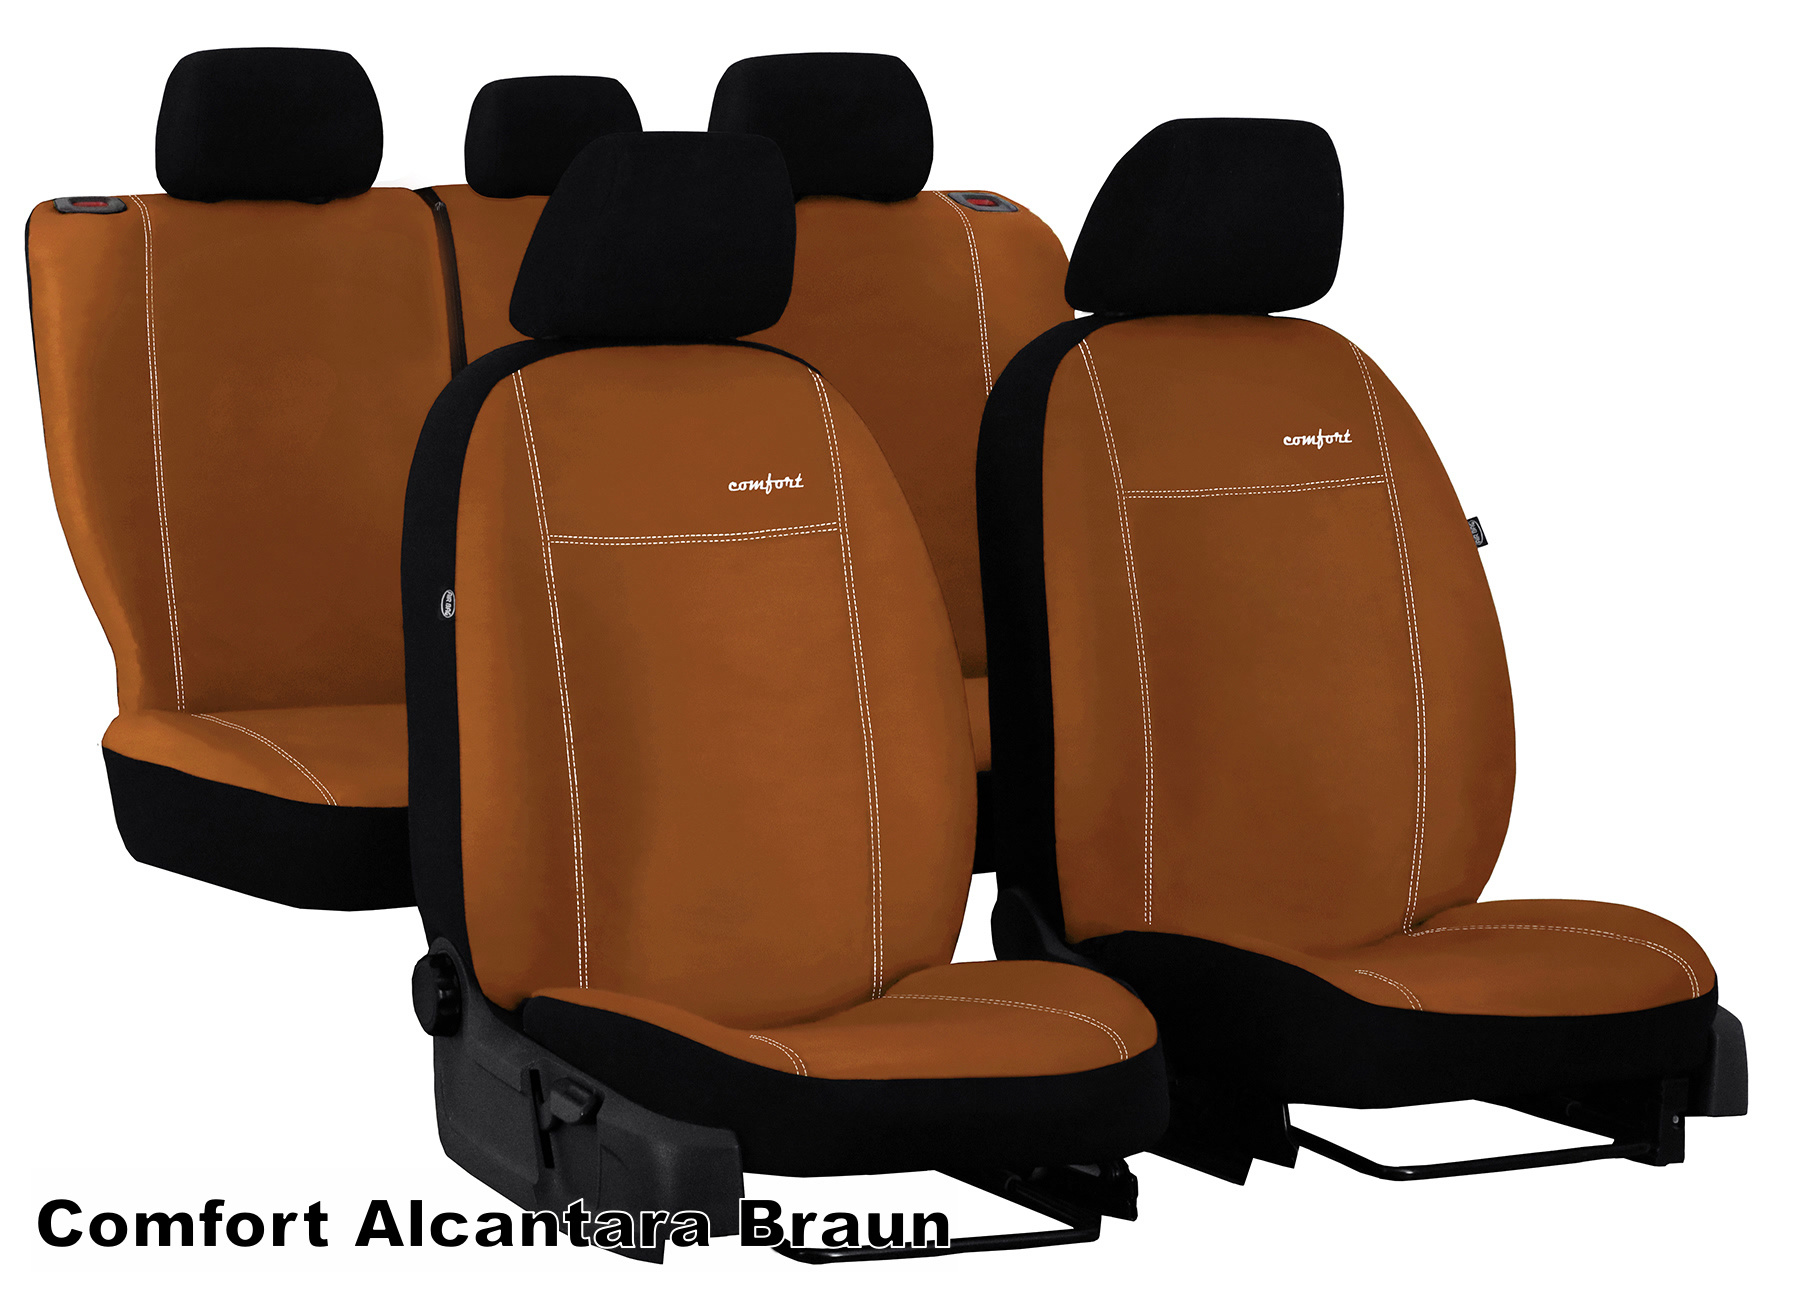 Autositzbezüge Universal Schonbezüge Sitzauflage Schonbezug COMFORT BLAU